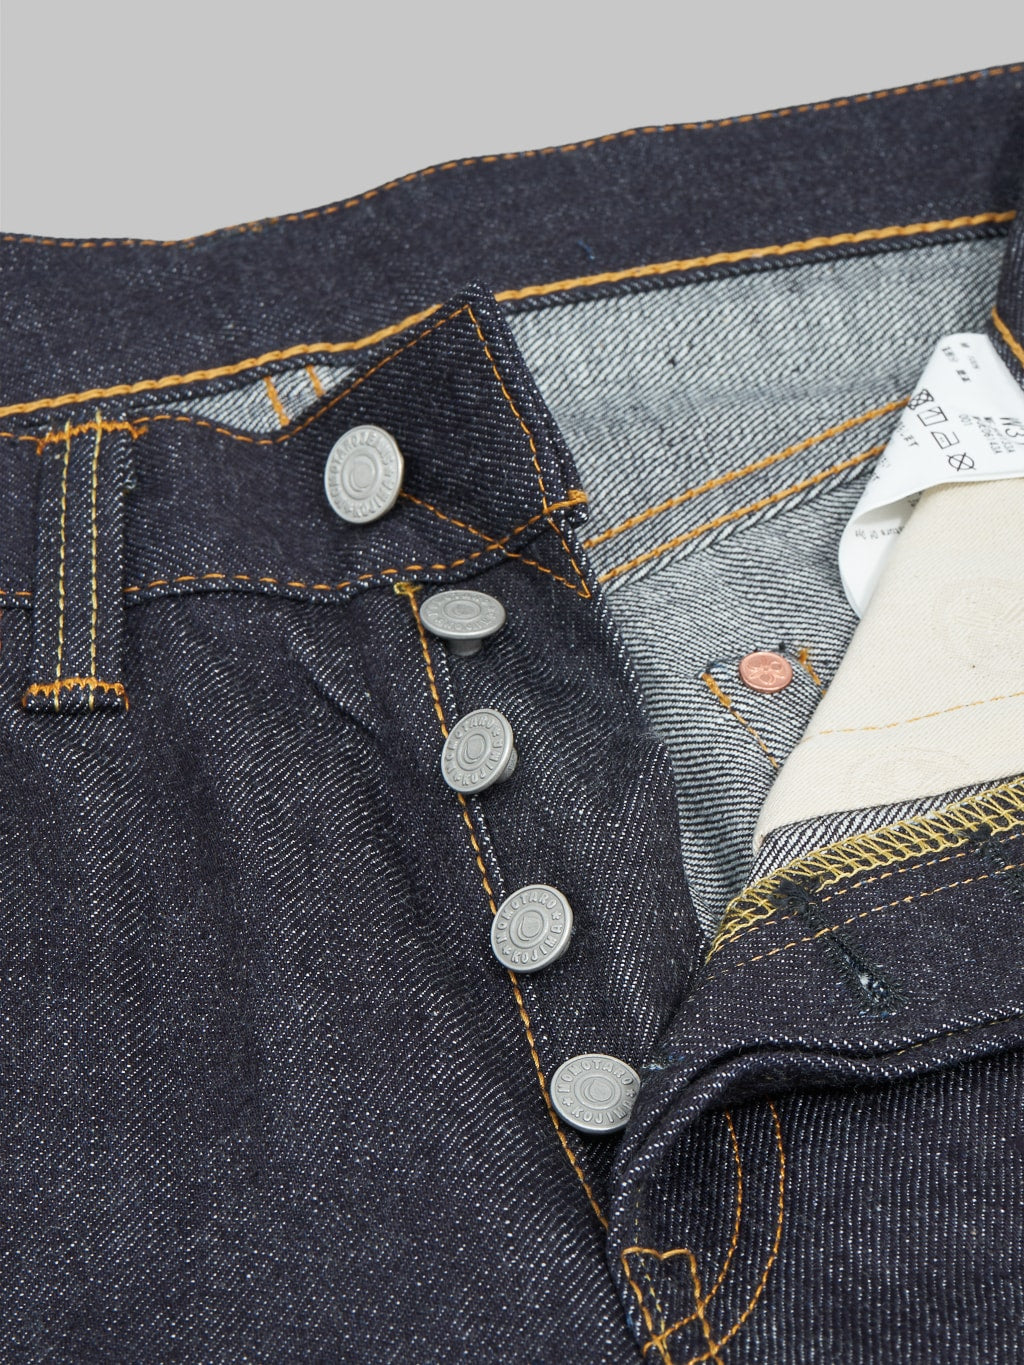 momotaro 0605 13 indigo jeans natural tapered 13oz buttons closeup